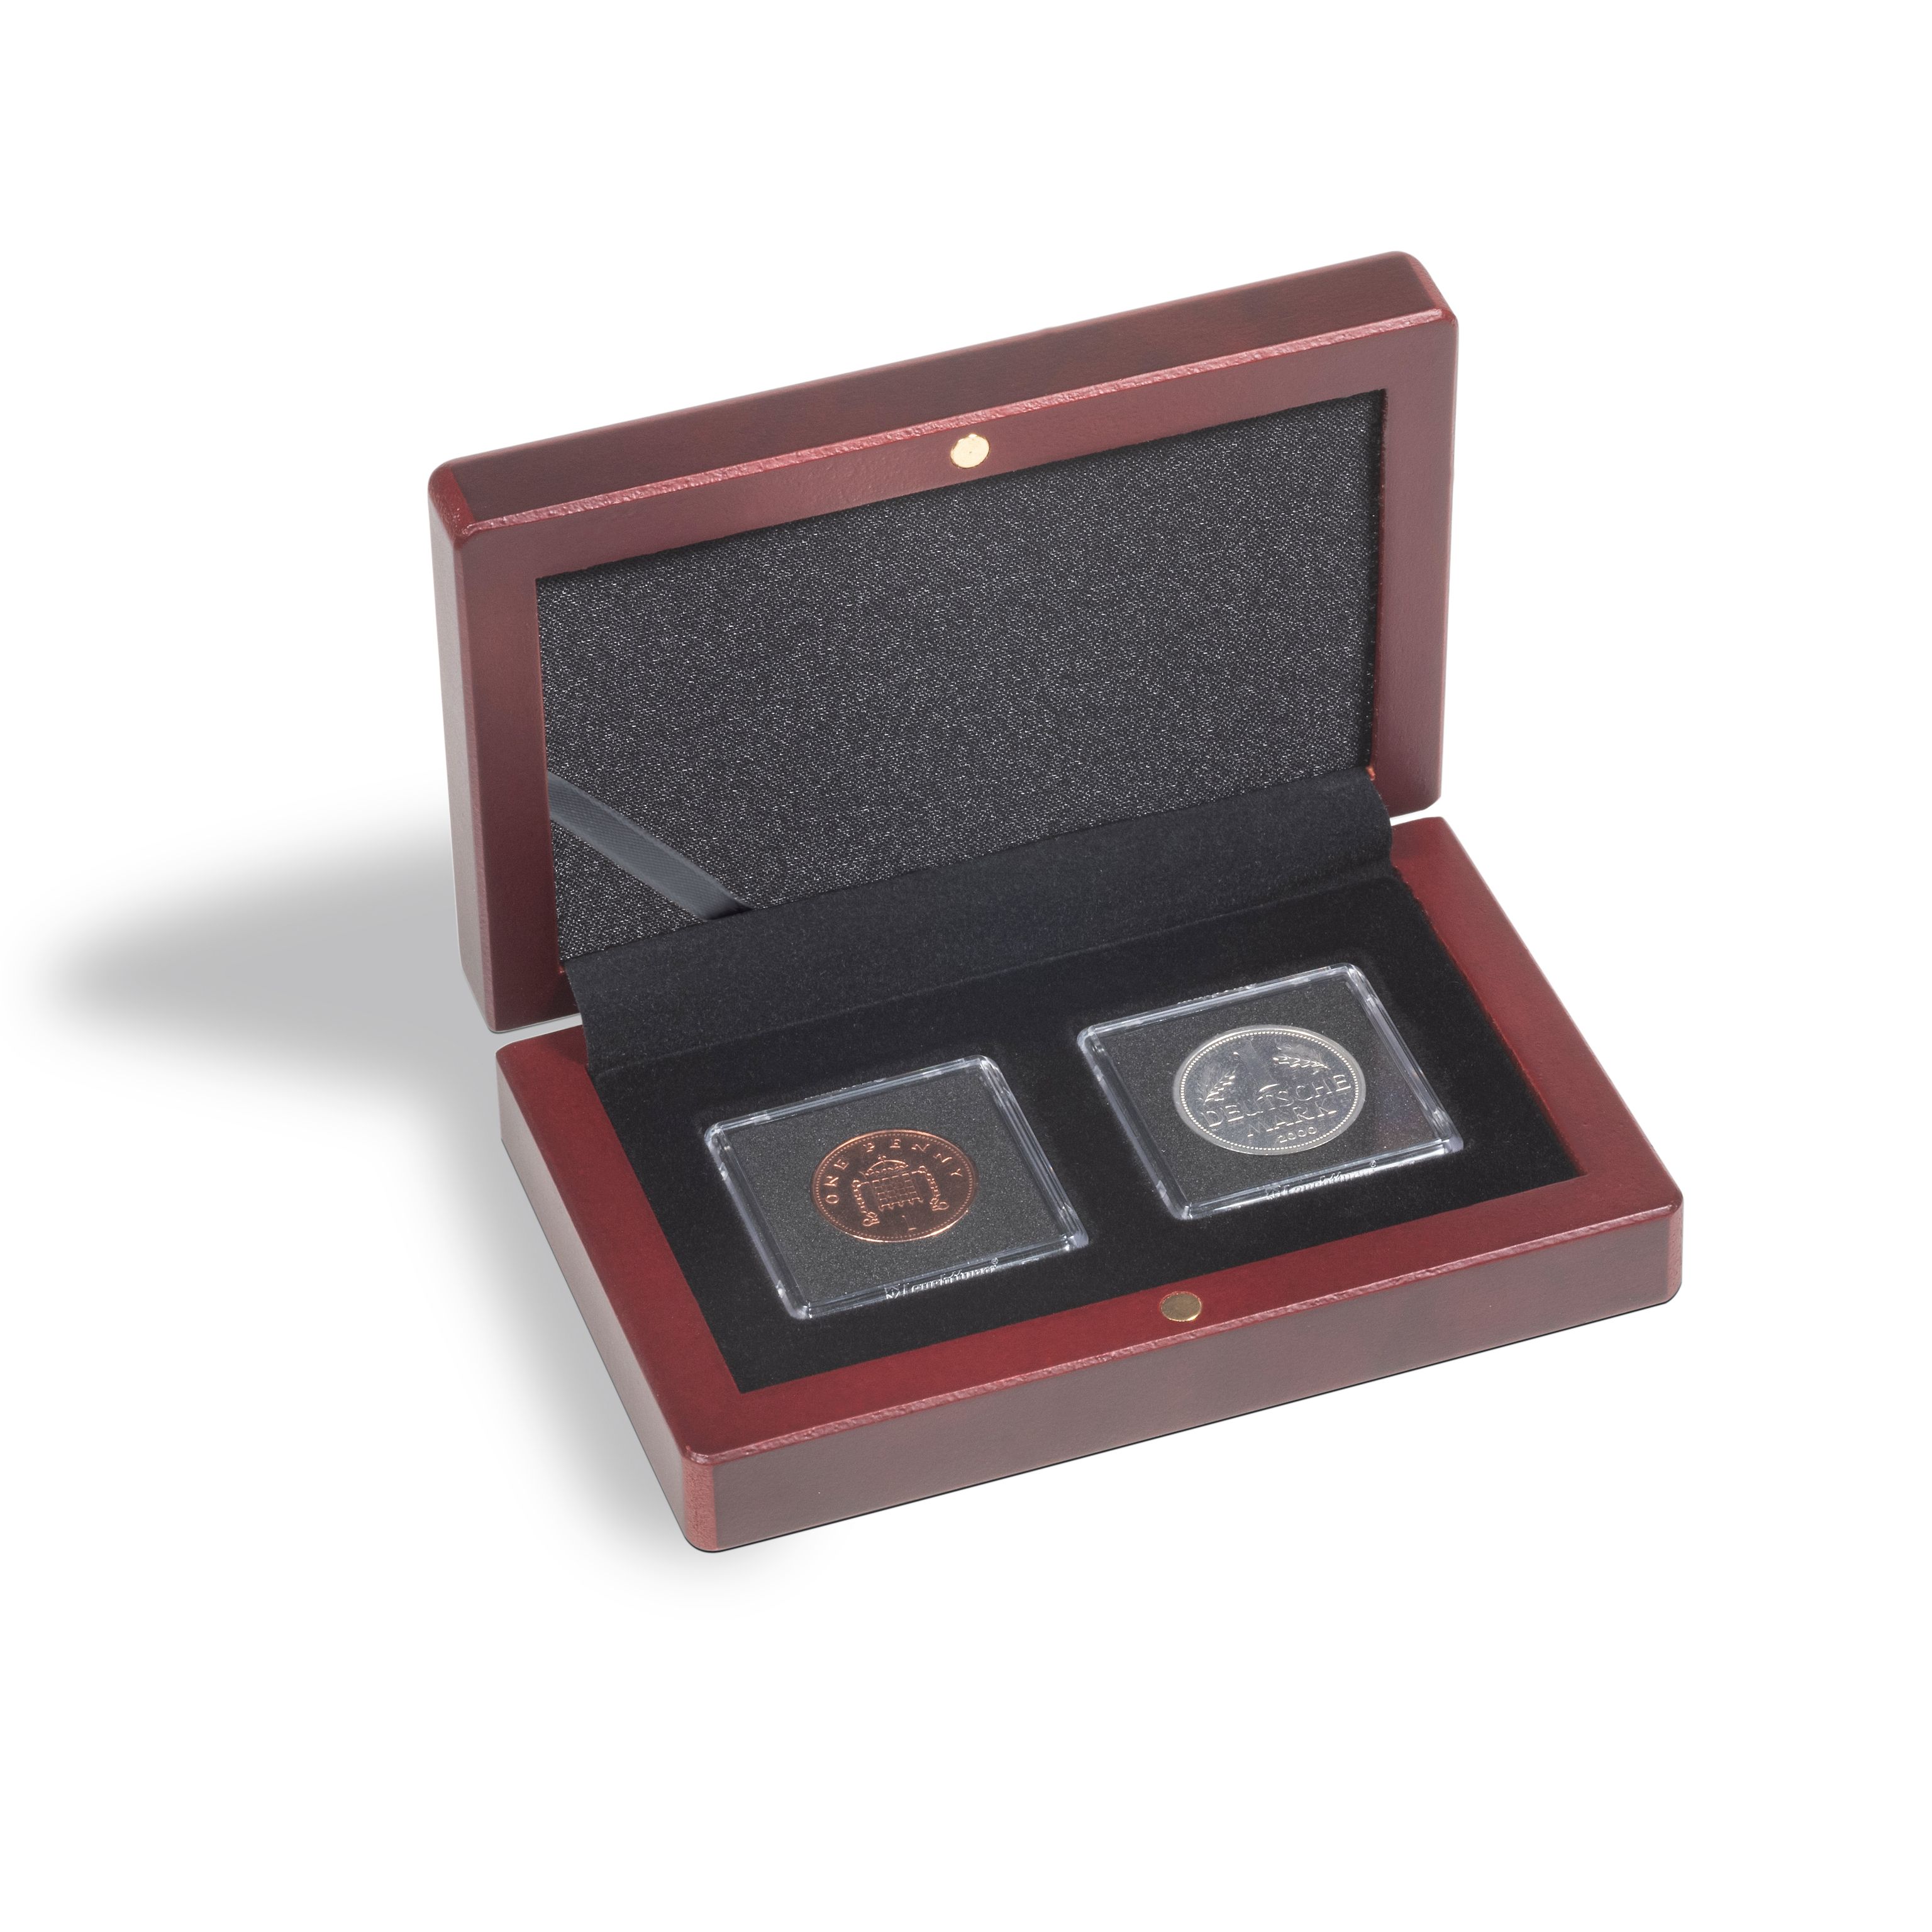 Naše kvalitné mincové etue VOLTERRA sú k dispozícii aj na uloženie hranatých kapsúl na mince, napr. QUADRUM, QUADRUM XL, QUADRUM MINI, MAGNICAPS, EVERSLAB. Etue sú vrátane saténovej stuhy na uloženie certifikátov vo vnútornom veku.
Puzdro na mince v mahagónovej farbe na uloženie 2 x kapsuly na mince QUADRUM MINI (38 x 38mm)
Vankúš na veko čalúnený čiernym saténom.
Spodná časť s velúrovým povrchom.
Mimoriadne jednoduché vyberanie kapsuly na mince QUADRUM
Kapsule QUADRUM nie sú súčasťou balenia.
Funkčnosť a krásny dizajn v dokonalej harmónii.
Praktický formát.